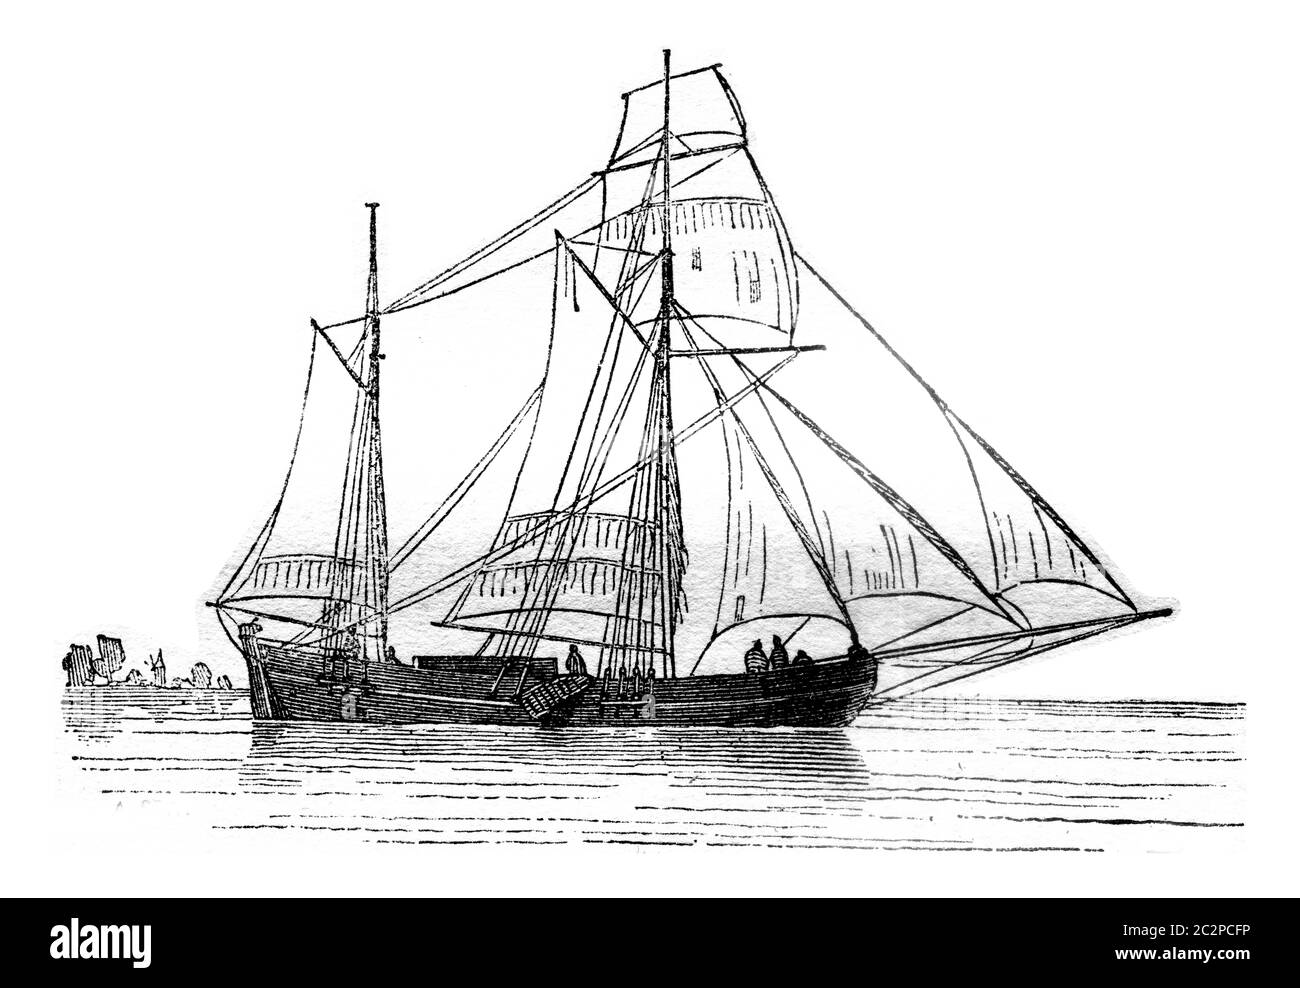 Galiote Holländisch landete, Liegeplätze auf Steuerbord, von der Seite gesehen, Vintage gravierte Illustration. Magasin Pittoresque 1841. Stockfoto